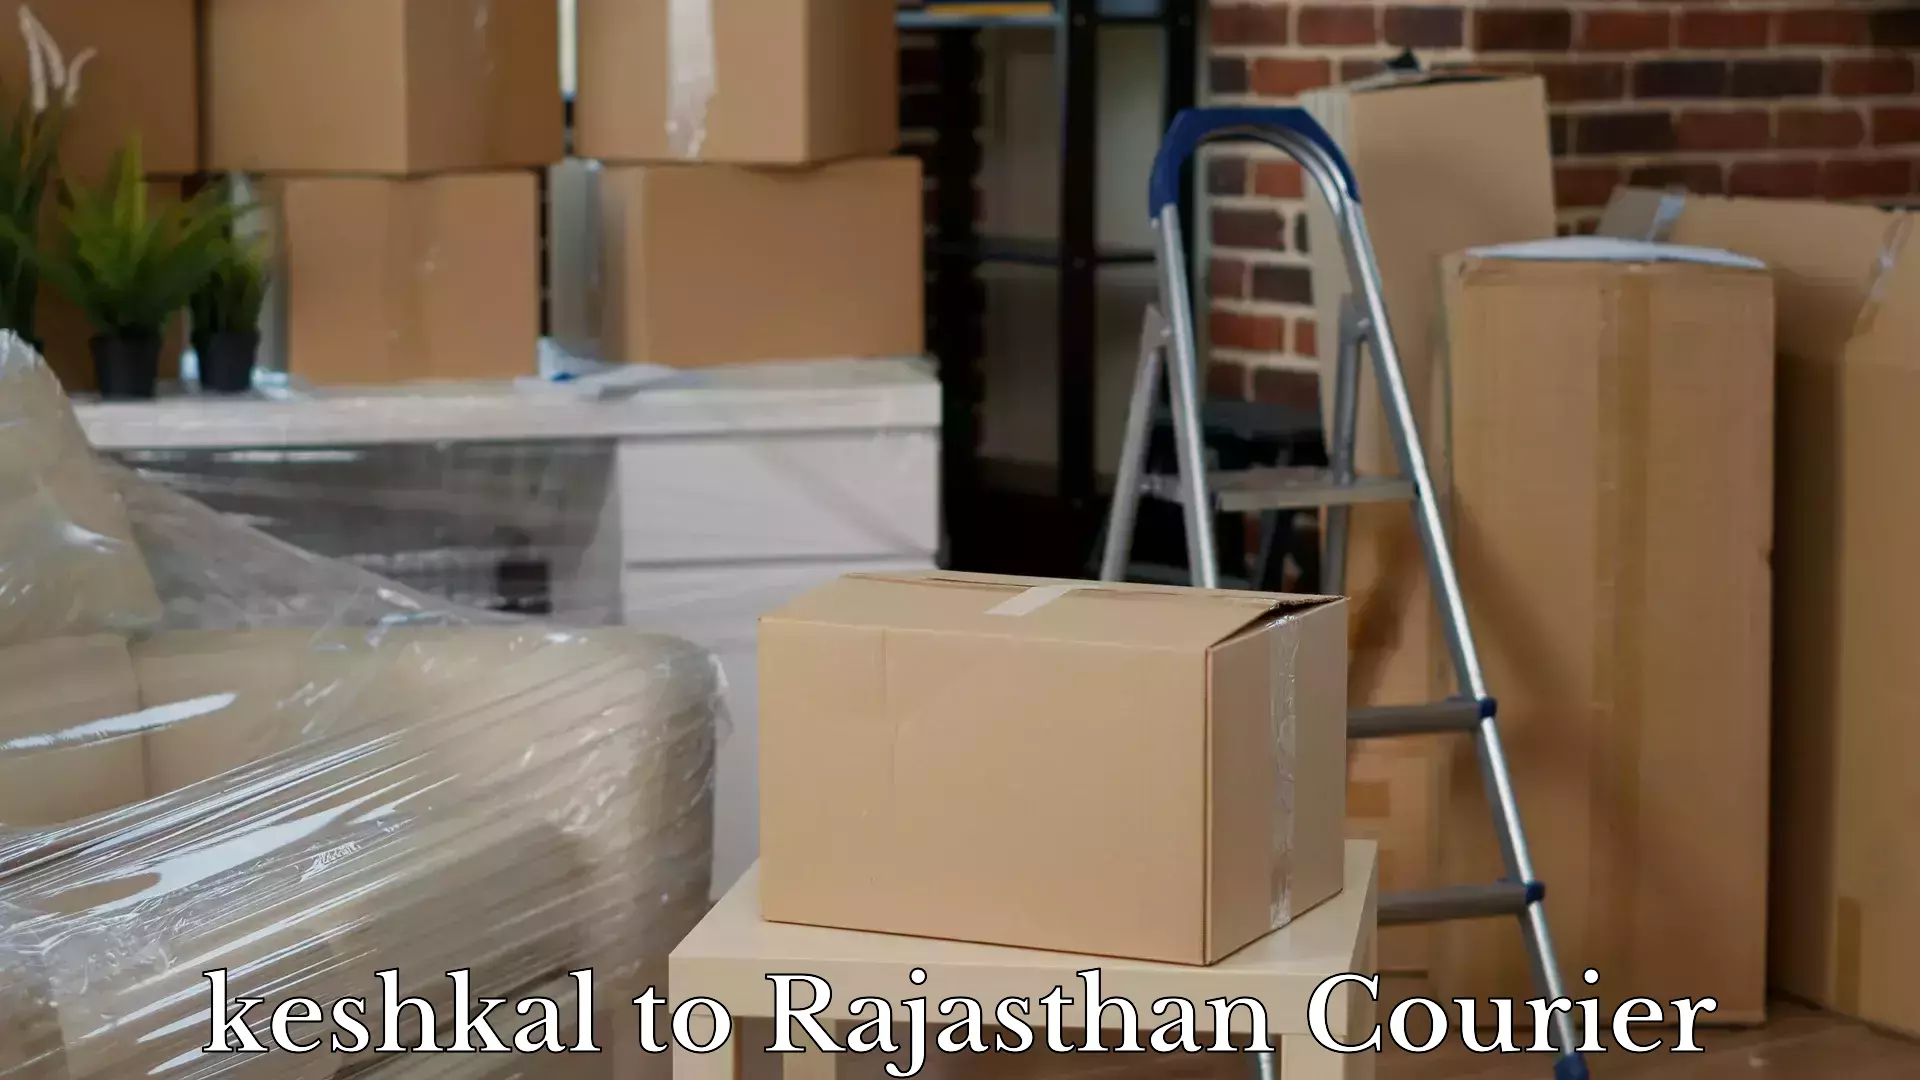 Door-to-door baggage service keshkal to Ras Pali